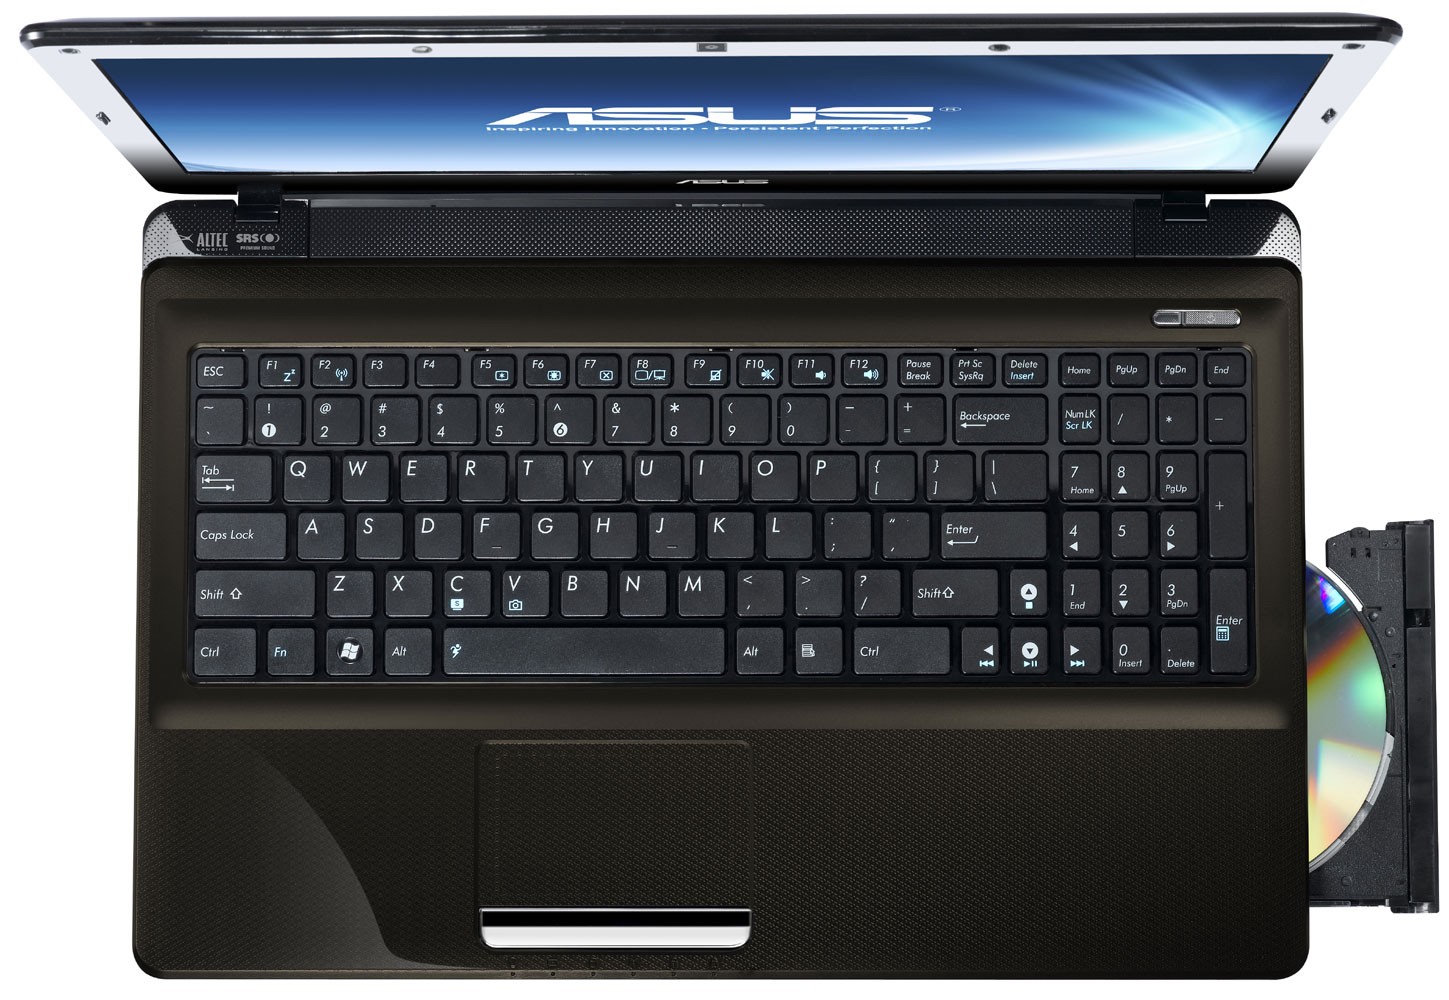 Ноутбук Asus X52n Цена В Украине